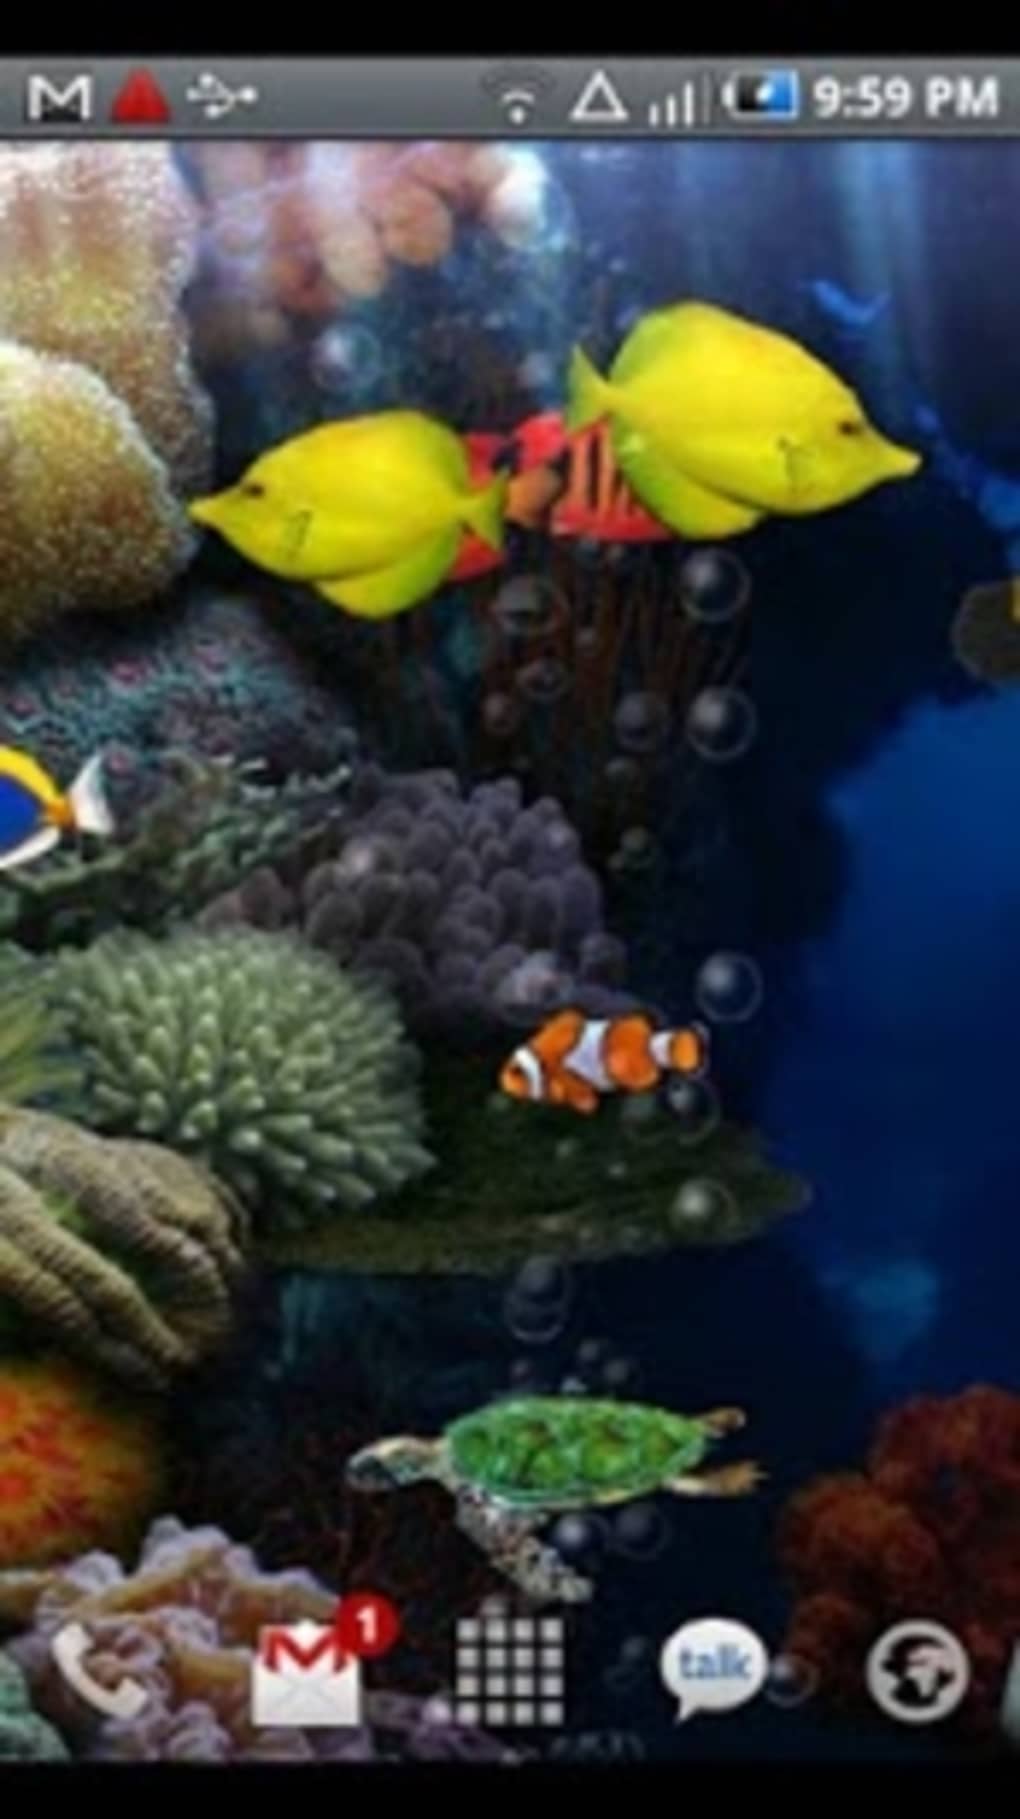 Aquarium Live Wallpaper Apk For Android Download